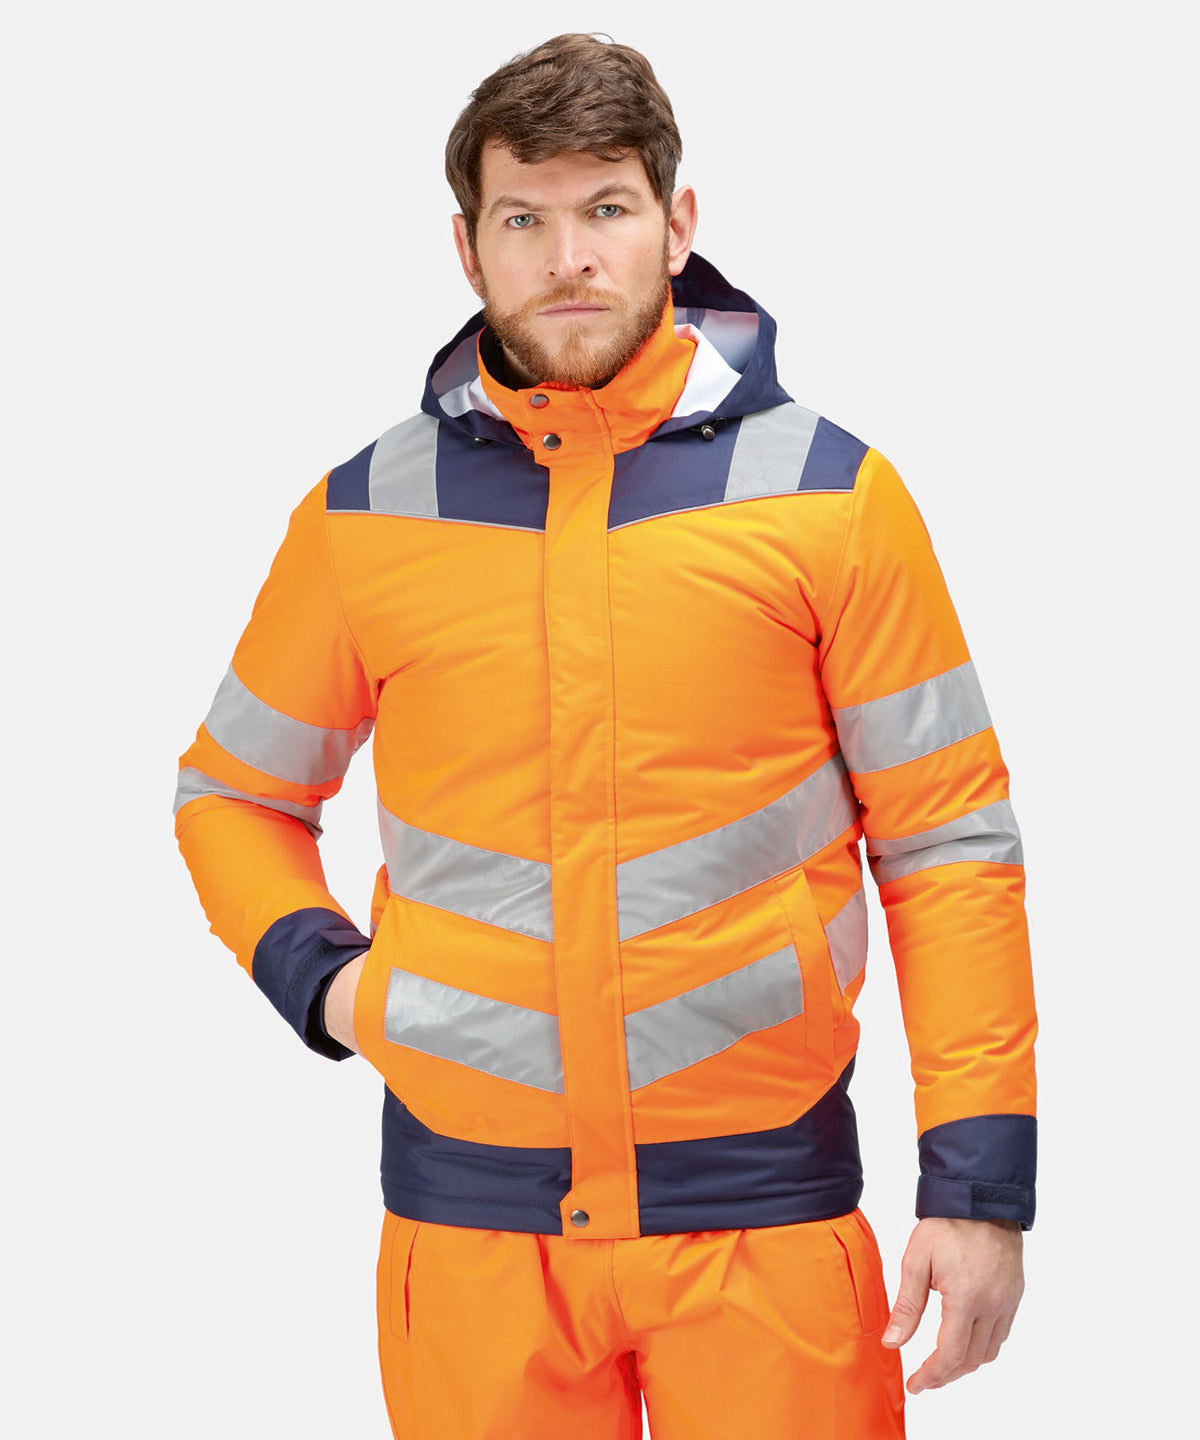 Pro hi-vis thermogen heated jacket